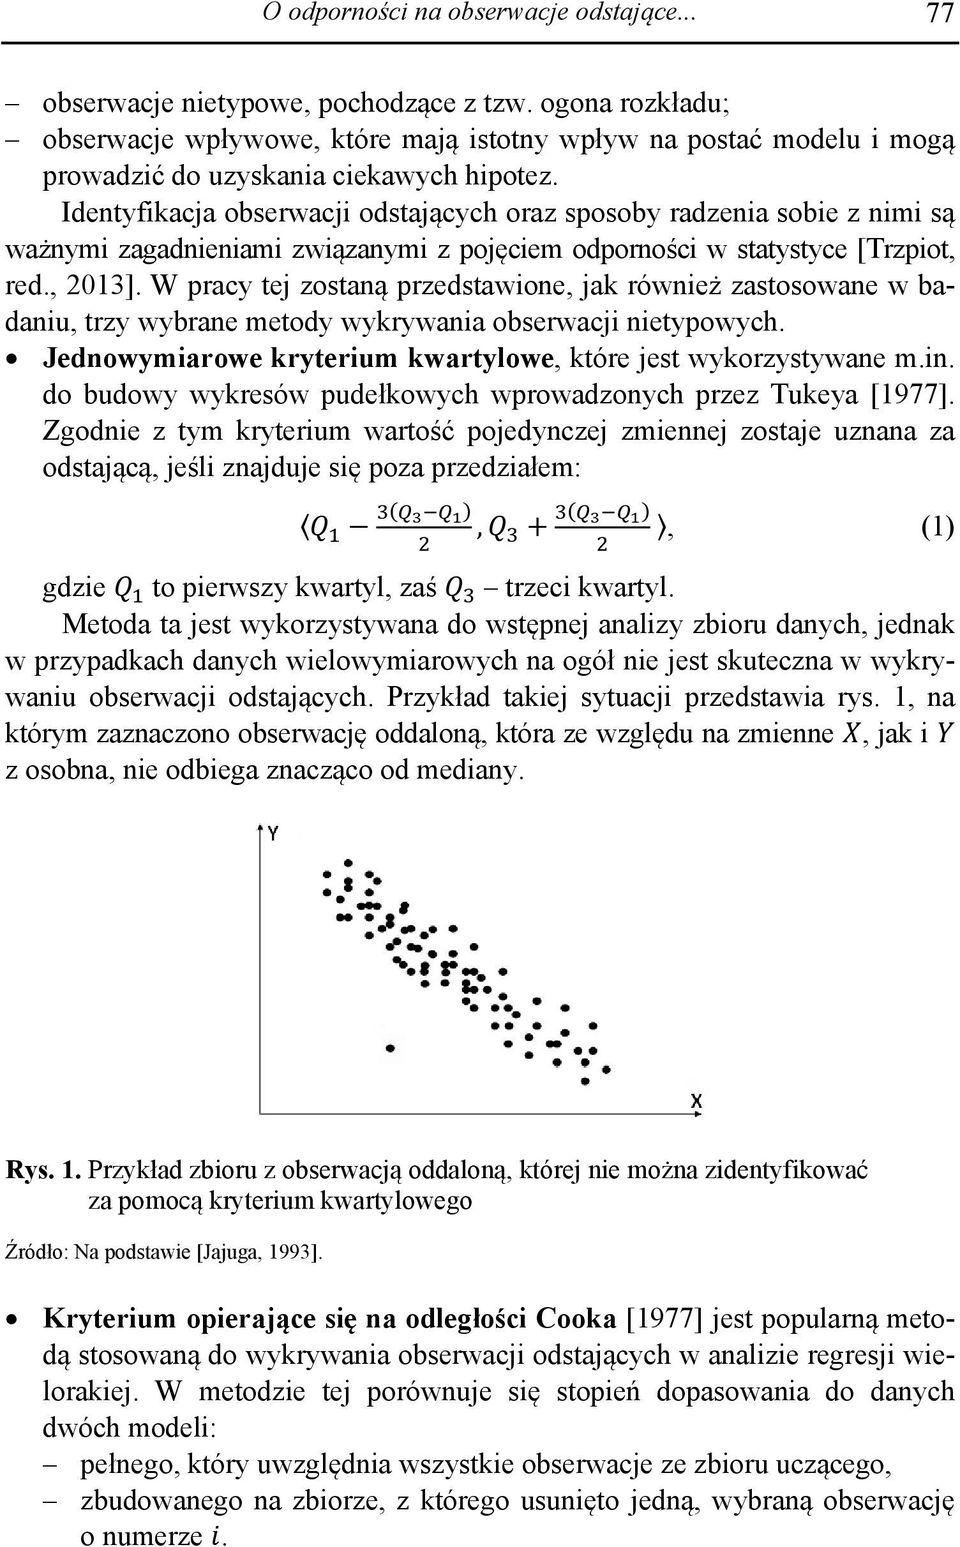 Identyfikacja obserwacji odstających oraz sposoby radzenia sobie z nimi są ważnymi zagadnieniami związanymi z pojęciem odporności w statystyce [Trzpiot, red., 2013].